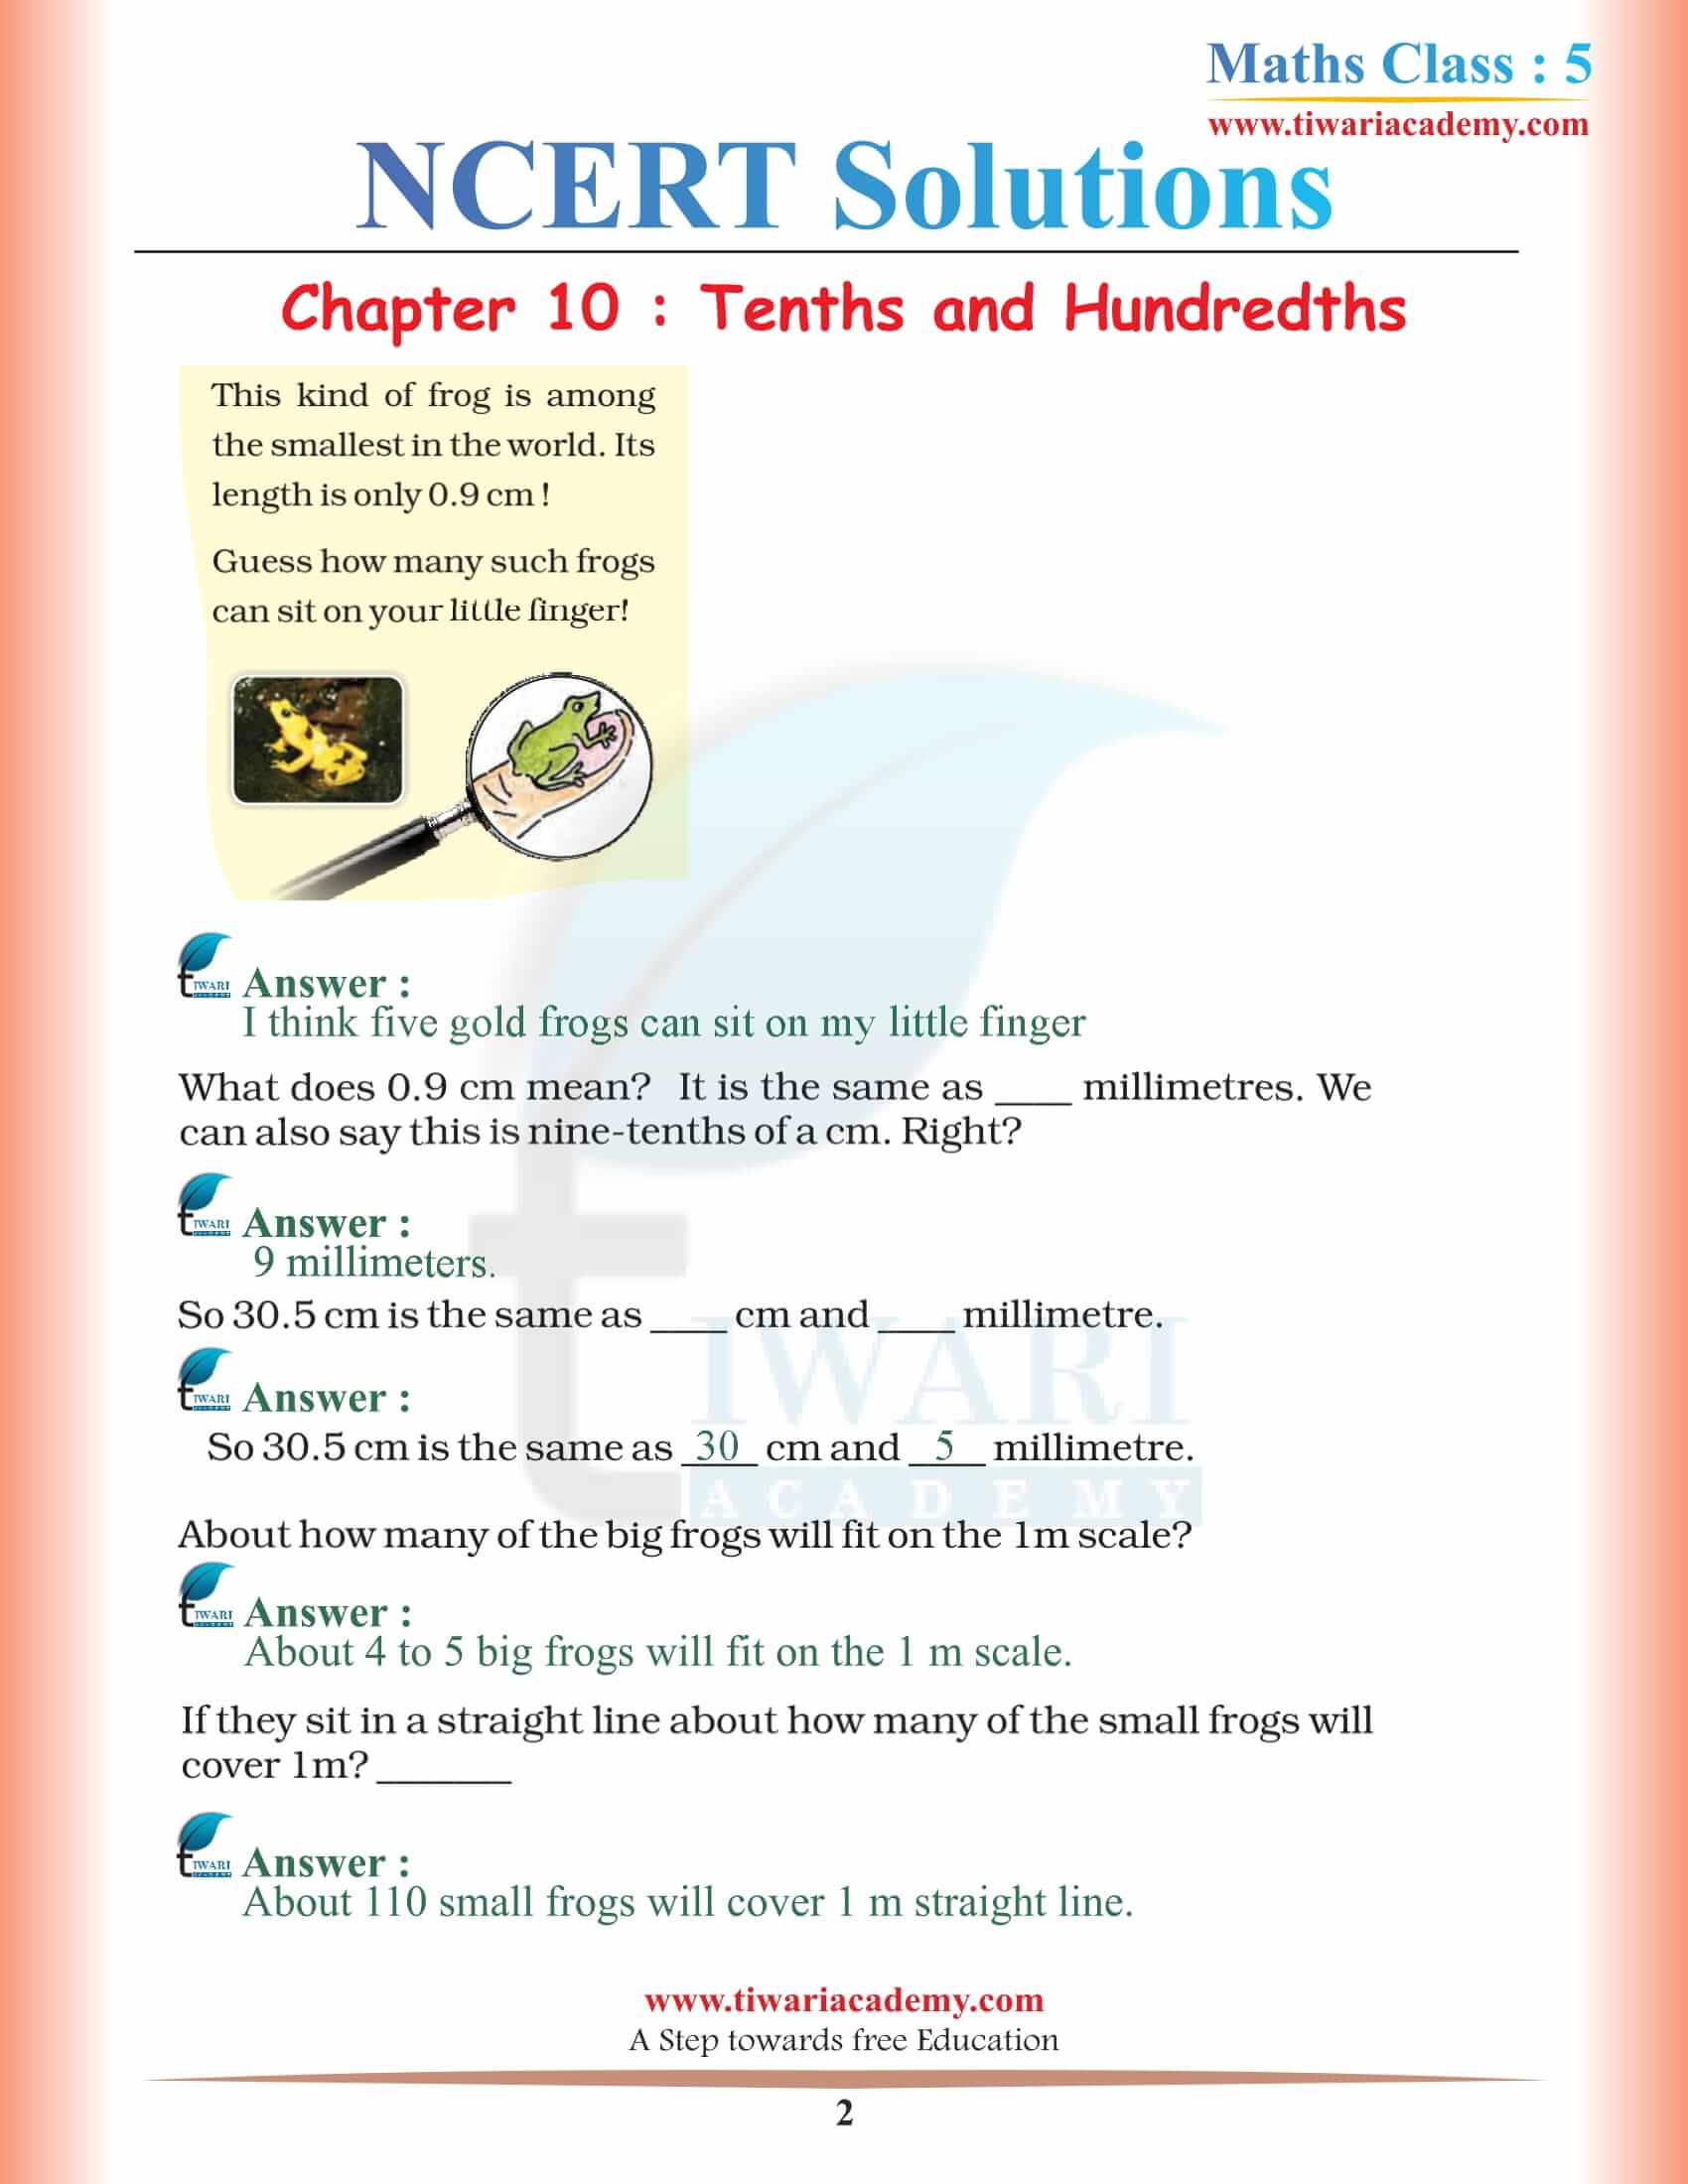 NCERT Solutions for Class 5 Maths Chapter 10